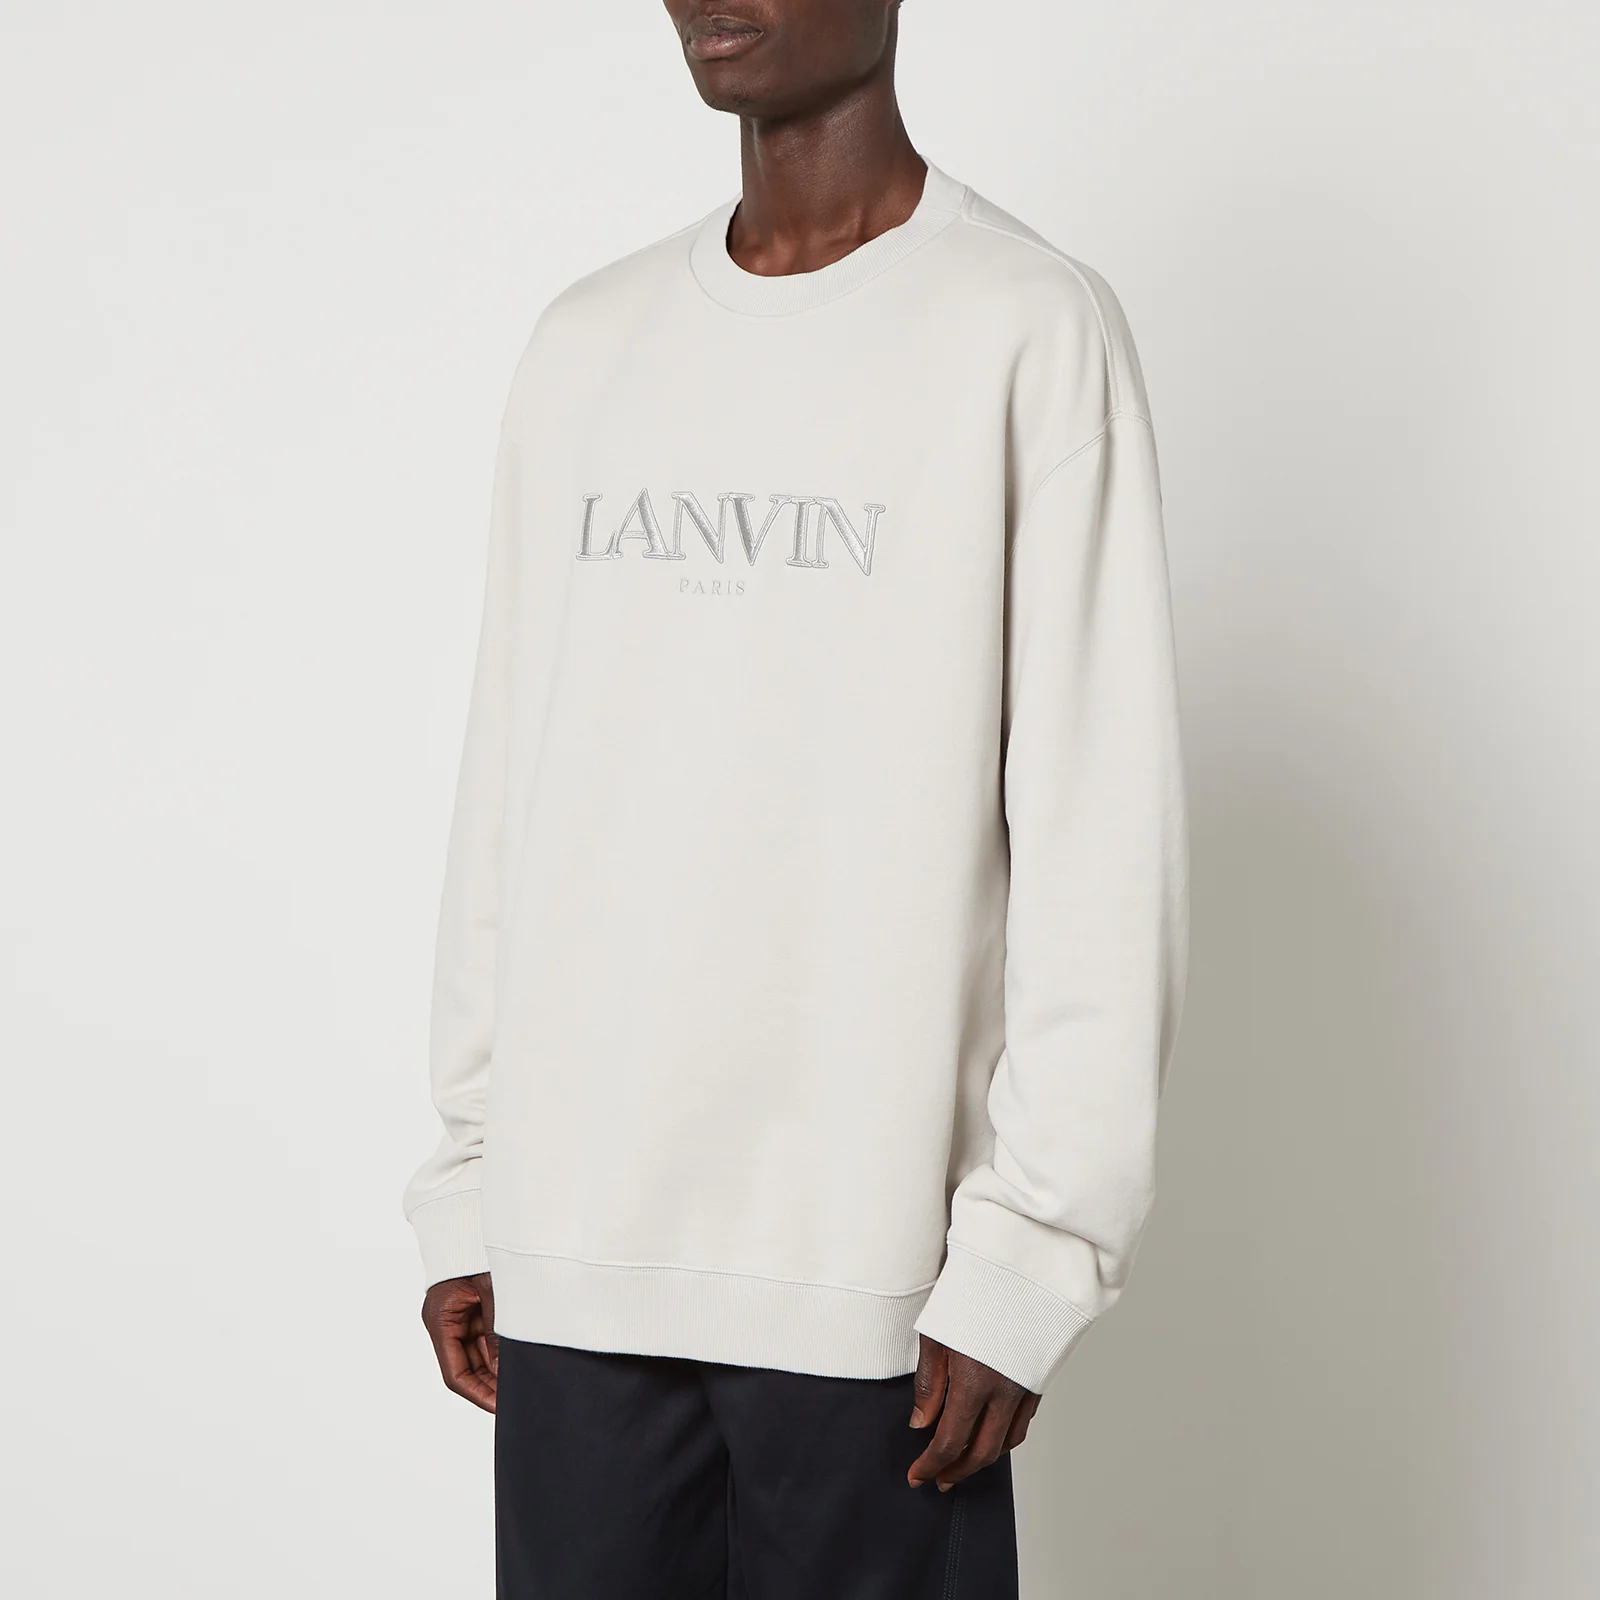 Lanvin Classic Lanvin Paris Embroidered Cotton Sweatshirt - S Image 1